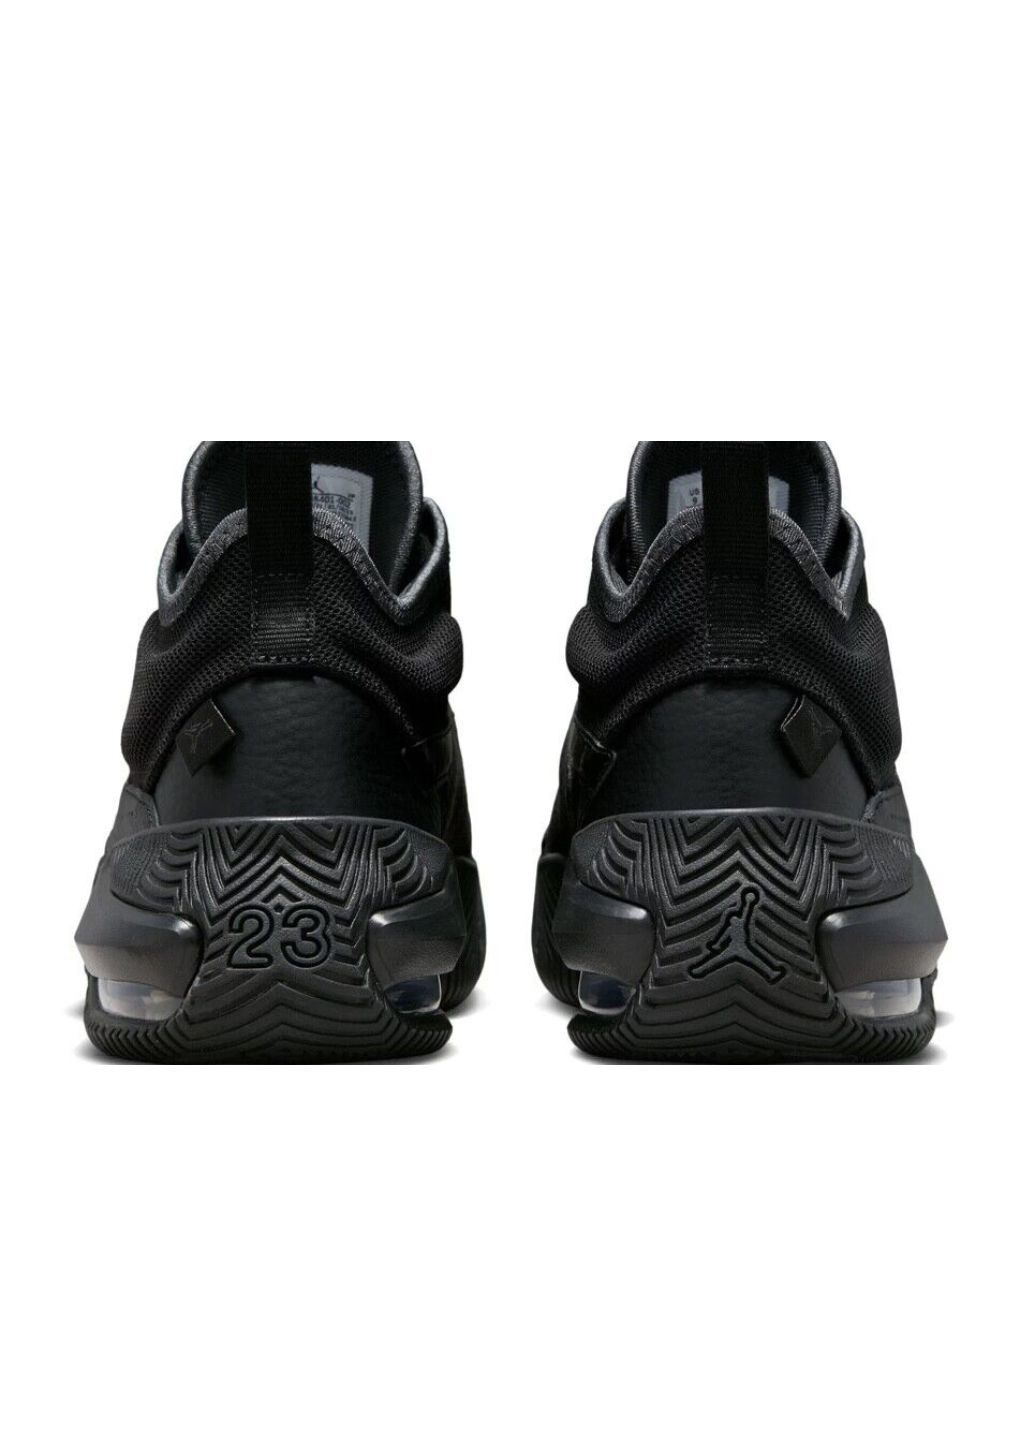 Черные всесезонные кроссовки dq8401-002_2024 Jordan Stay Loyal 2 Black